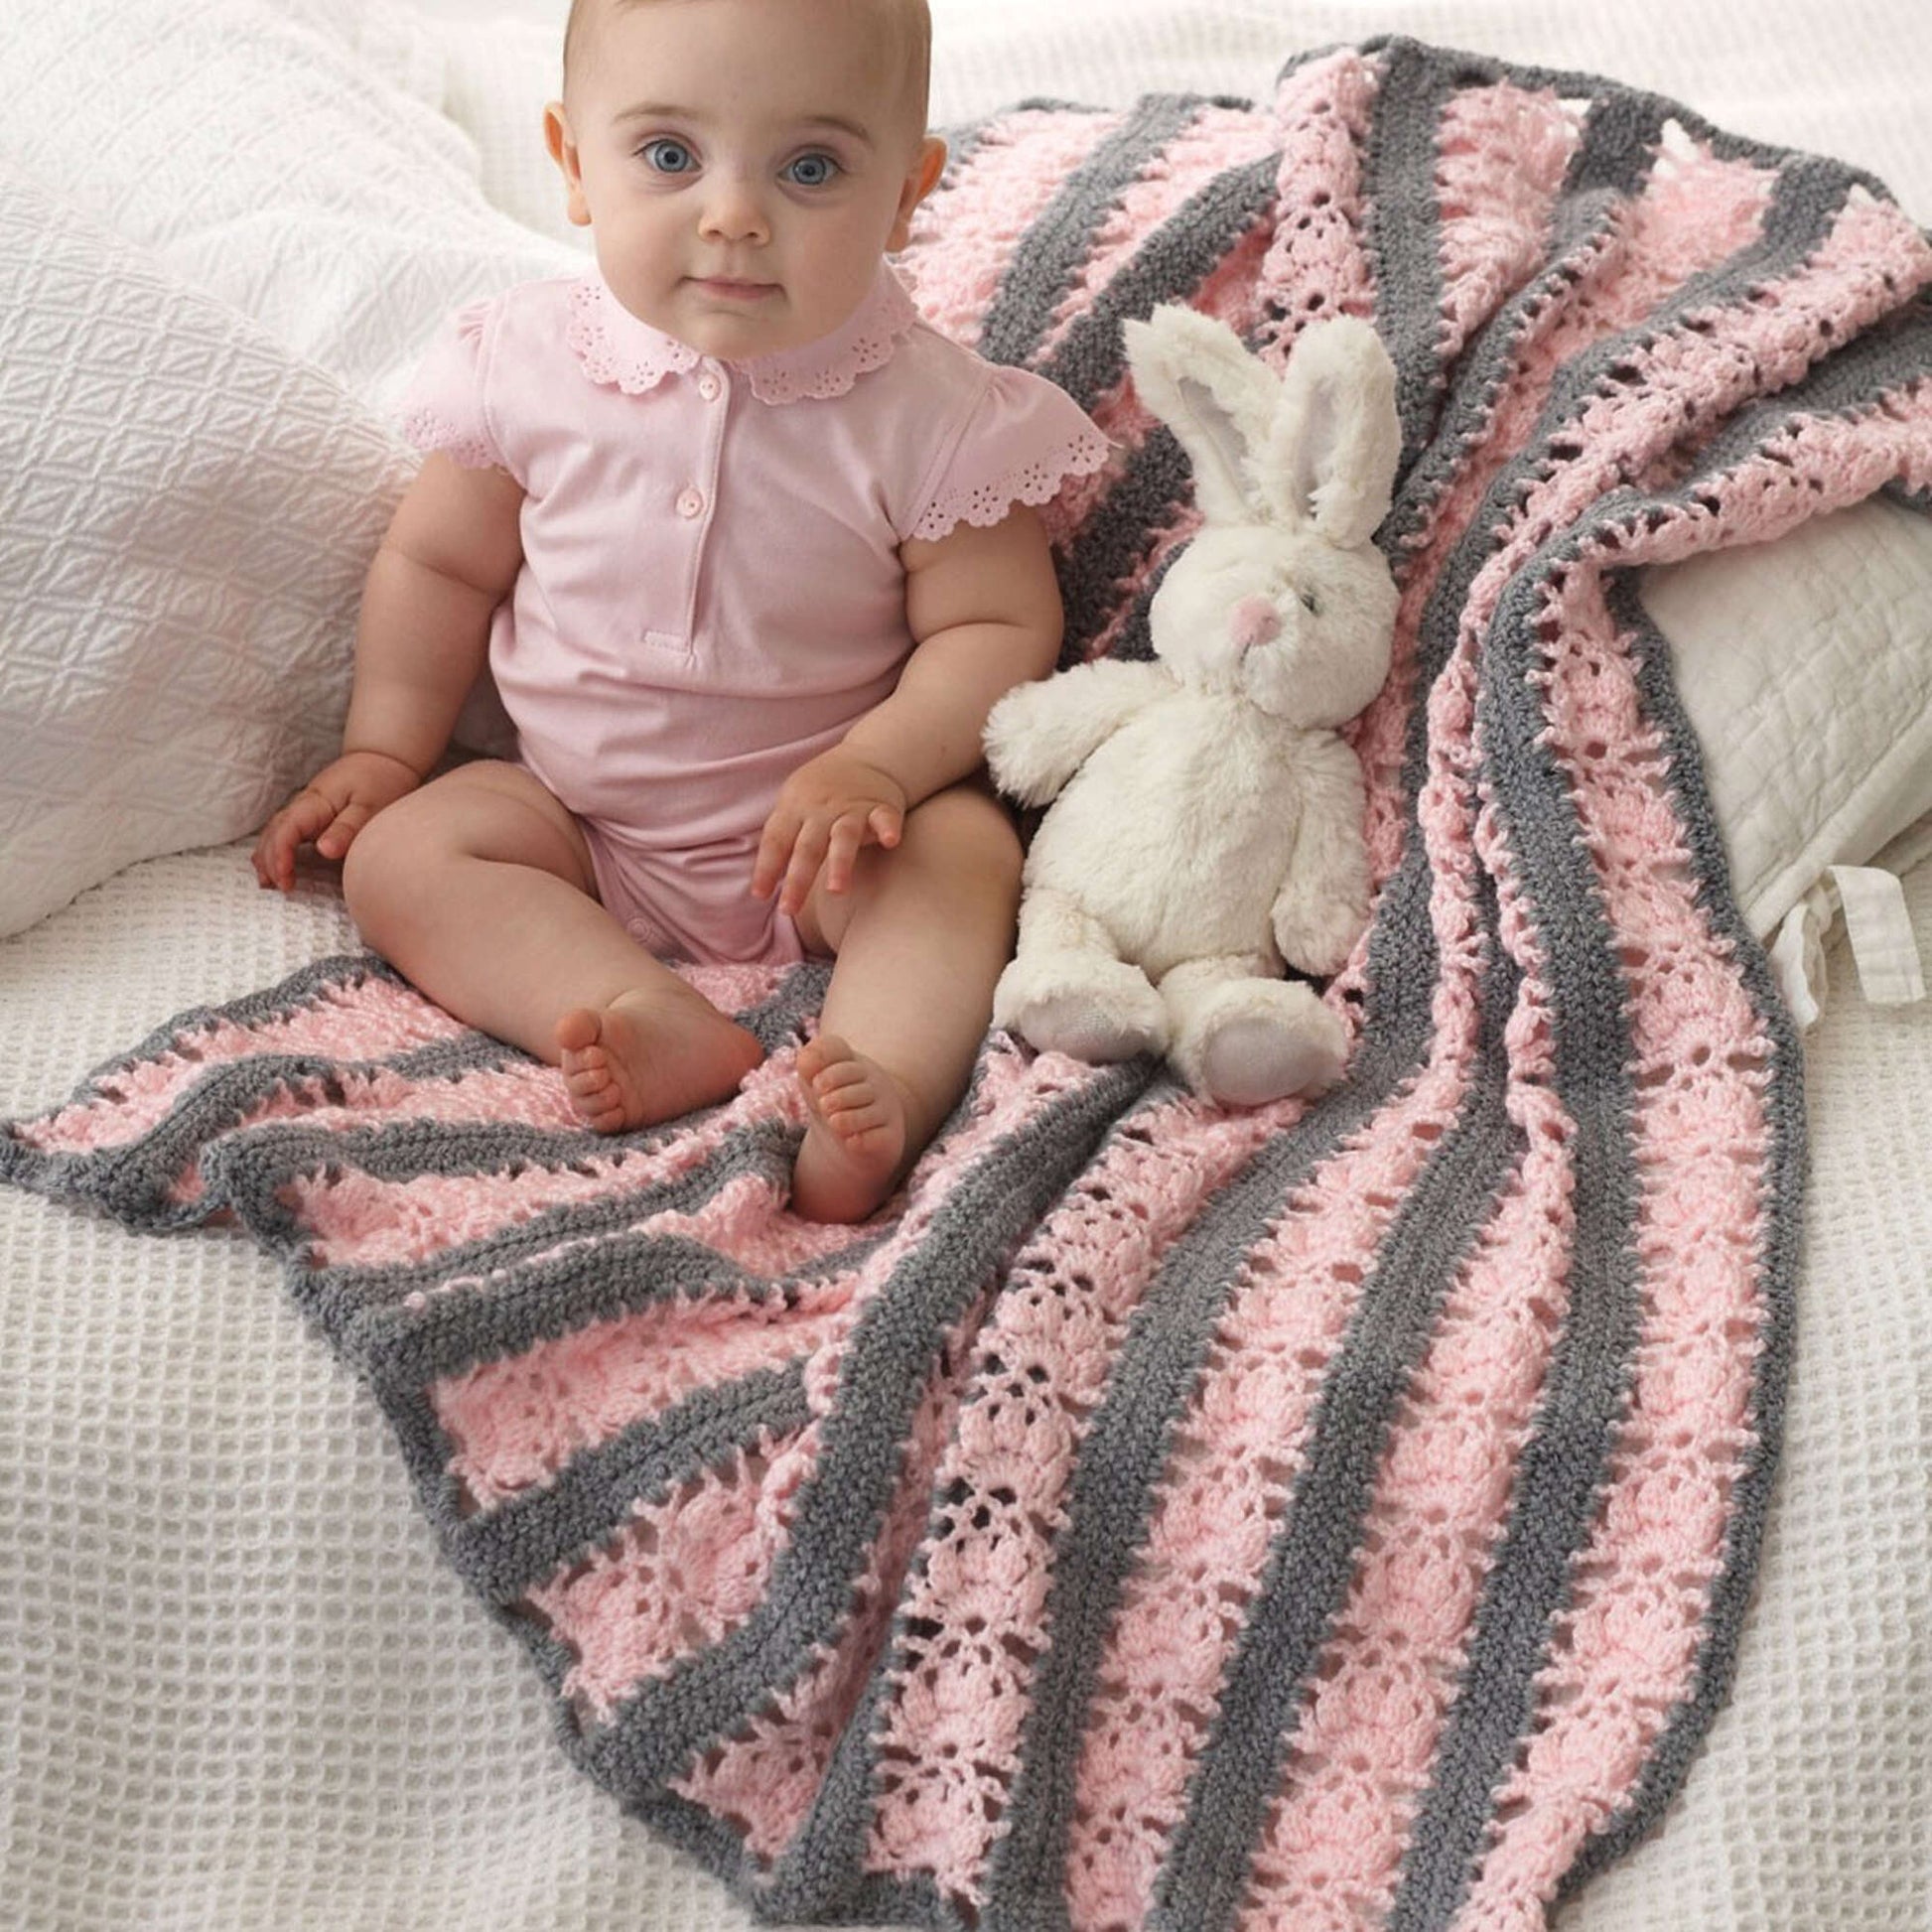 Bernat Lacy Stripes Crochet Blanket Crochet Blanket made in Bernat Softee Baby yarn